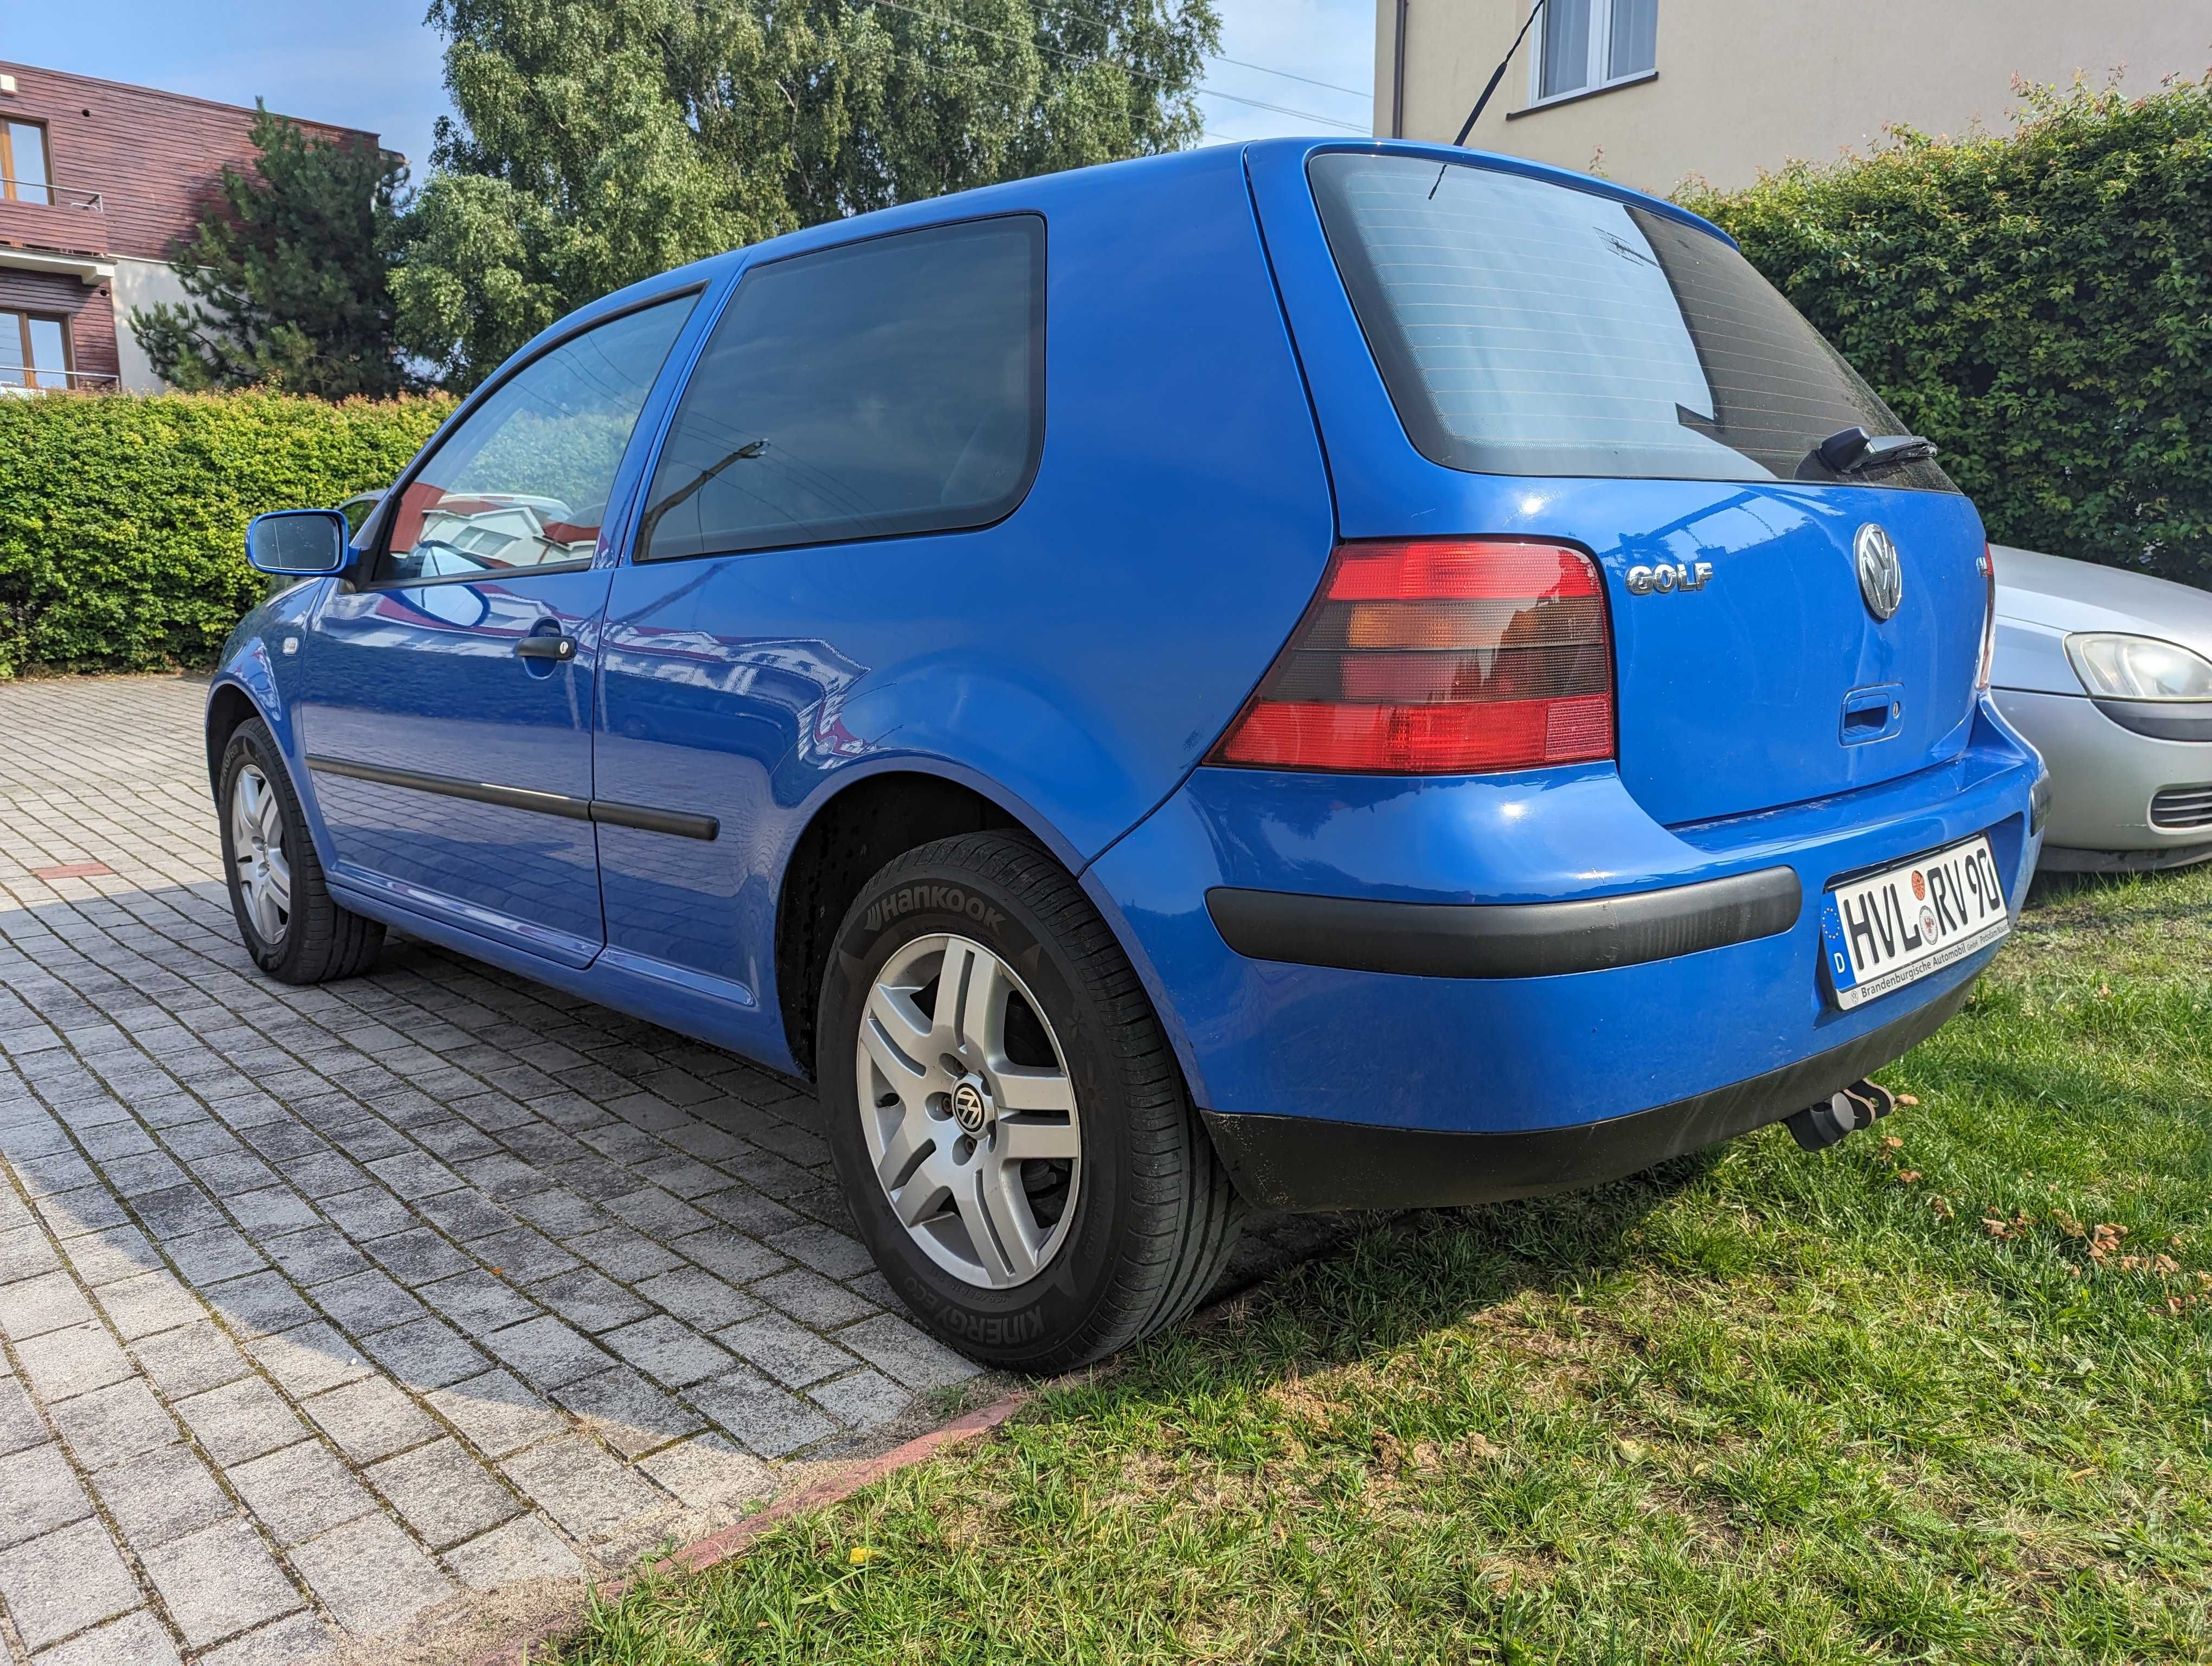 VW Golf 4 2002 r. klima ,sprowadzony